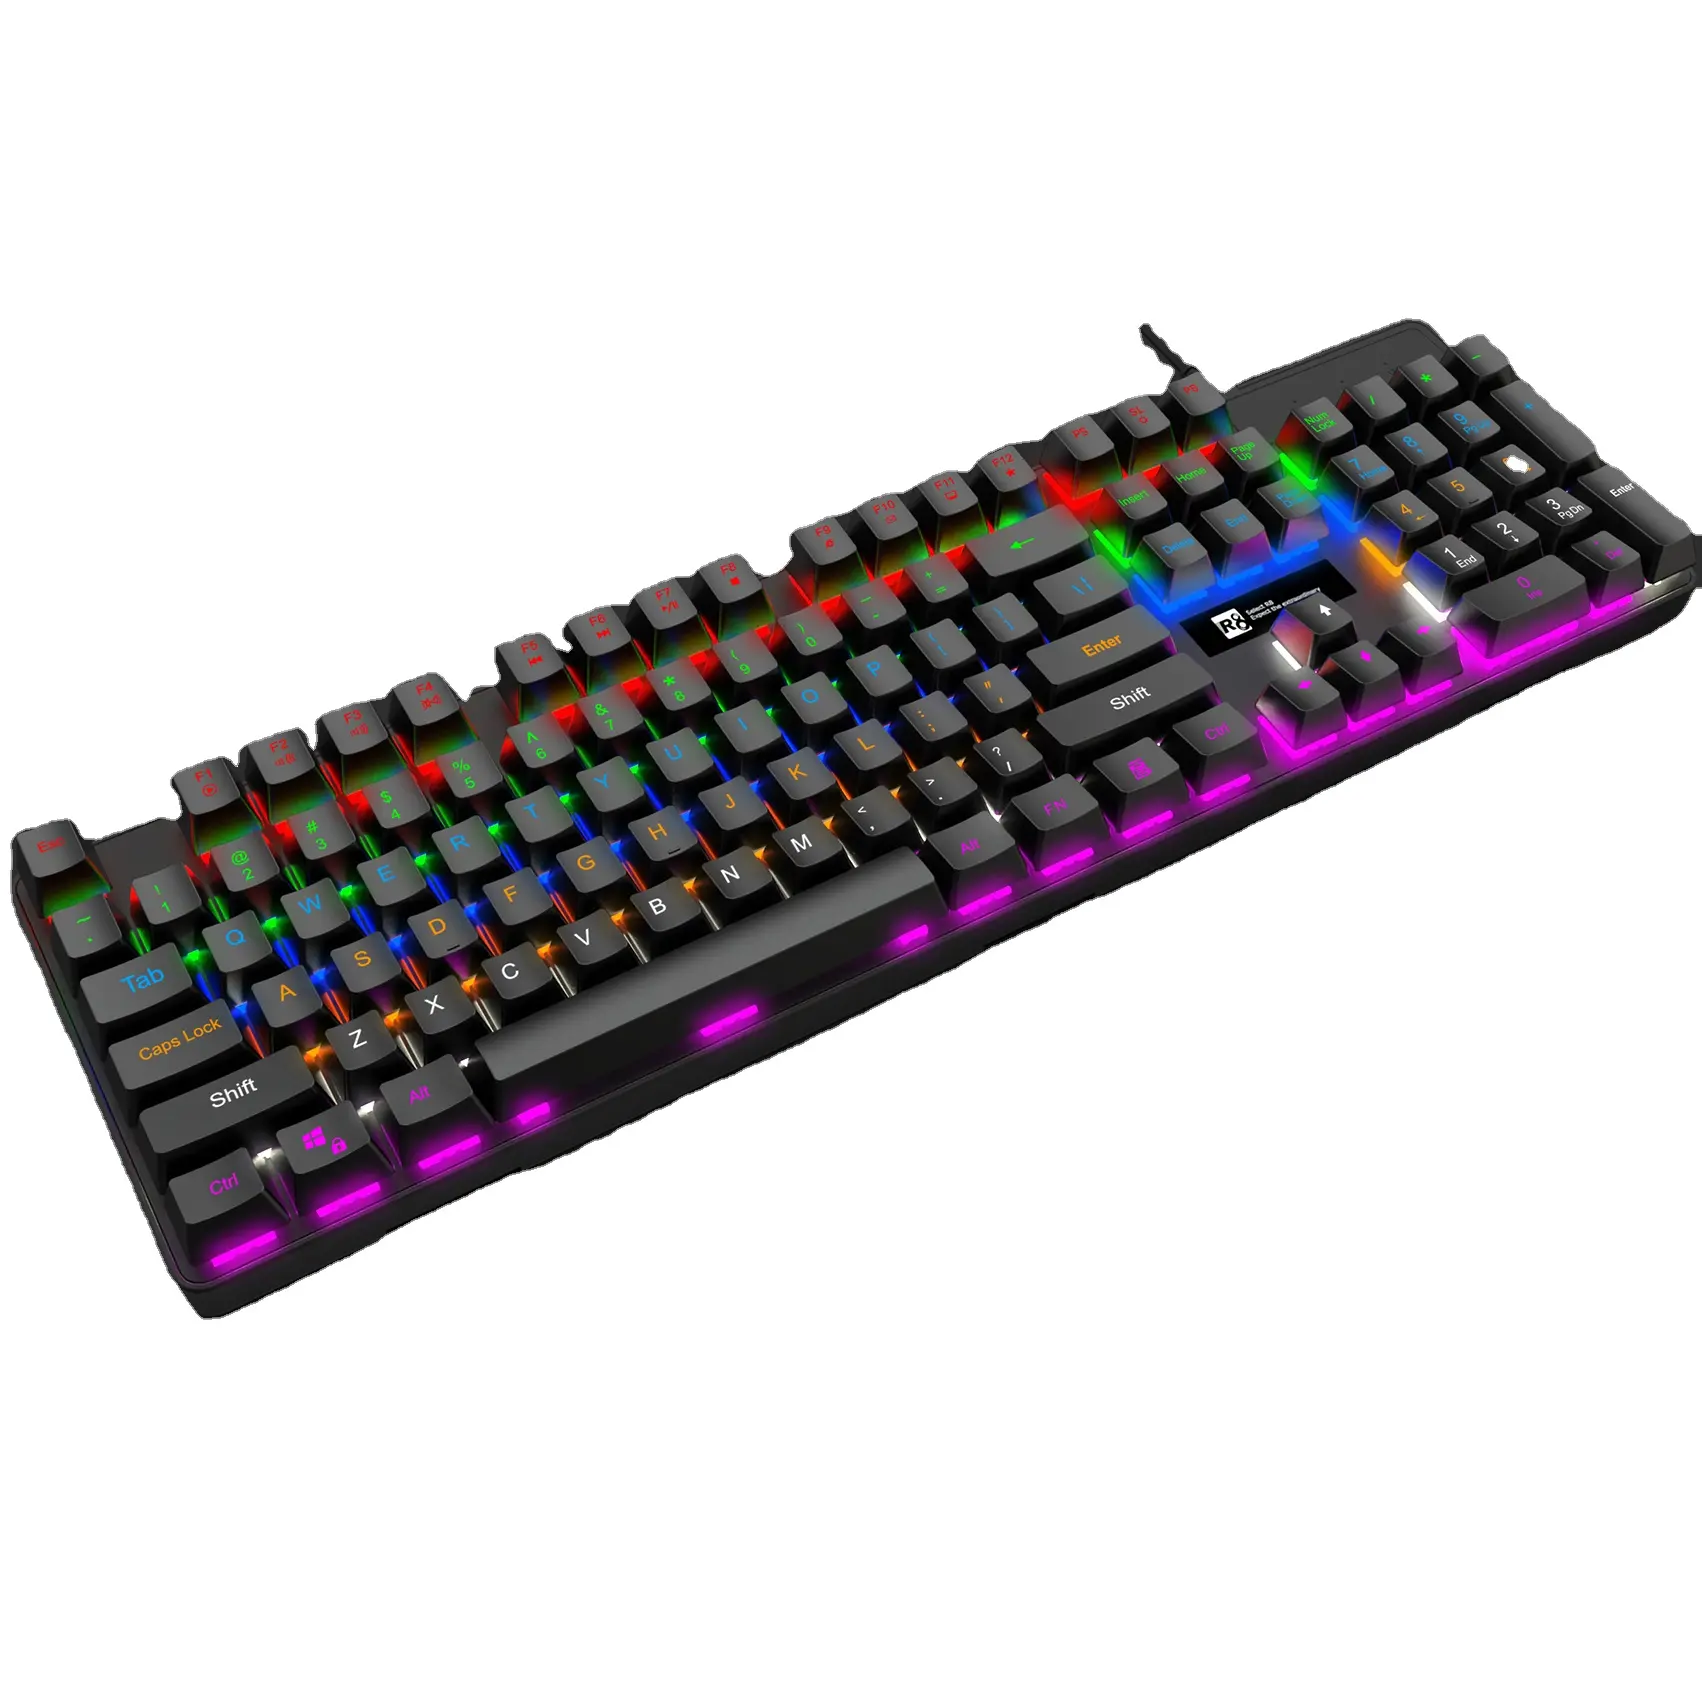 Marca OEM jugador RGB cable ergonomía computadora teclado de juego con arco iris de luz Led de Color